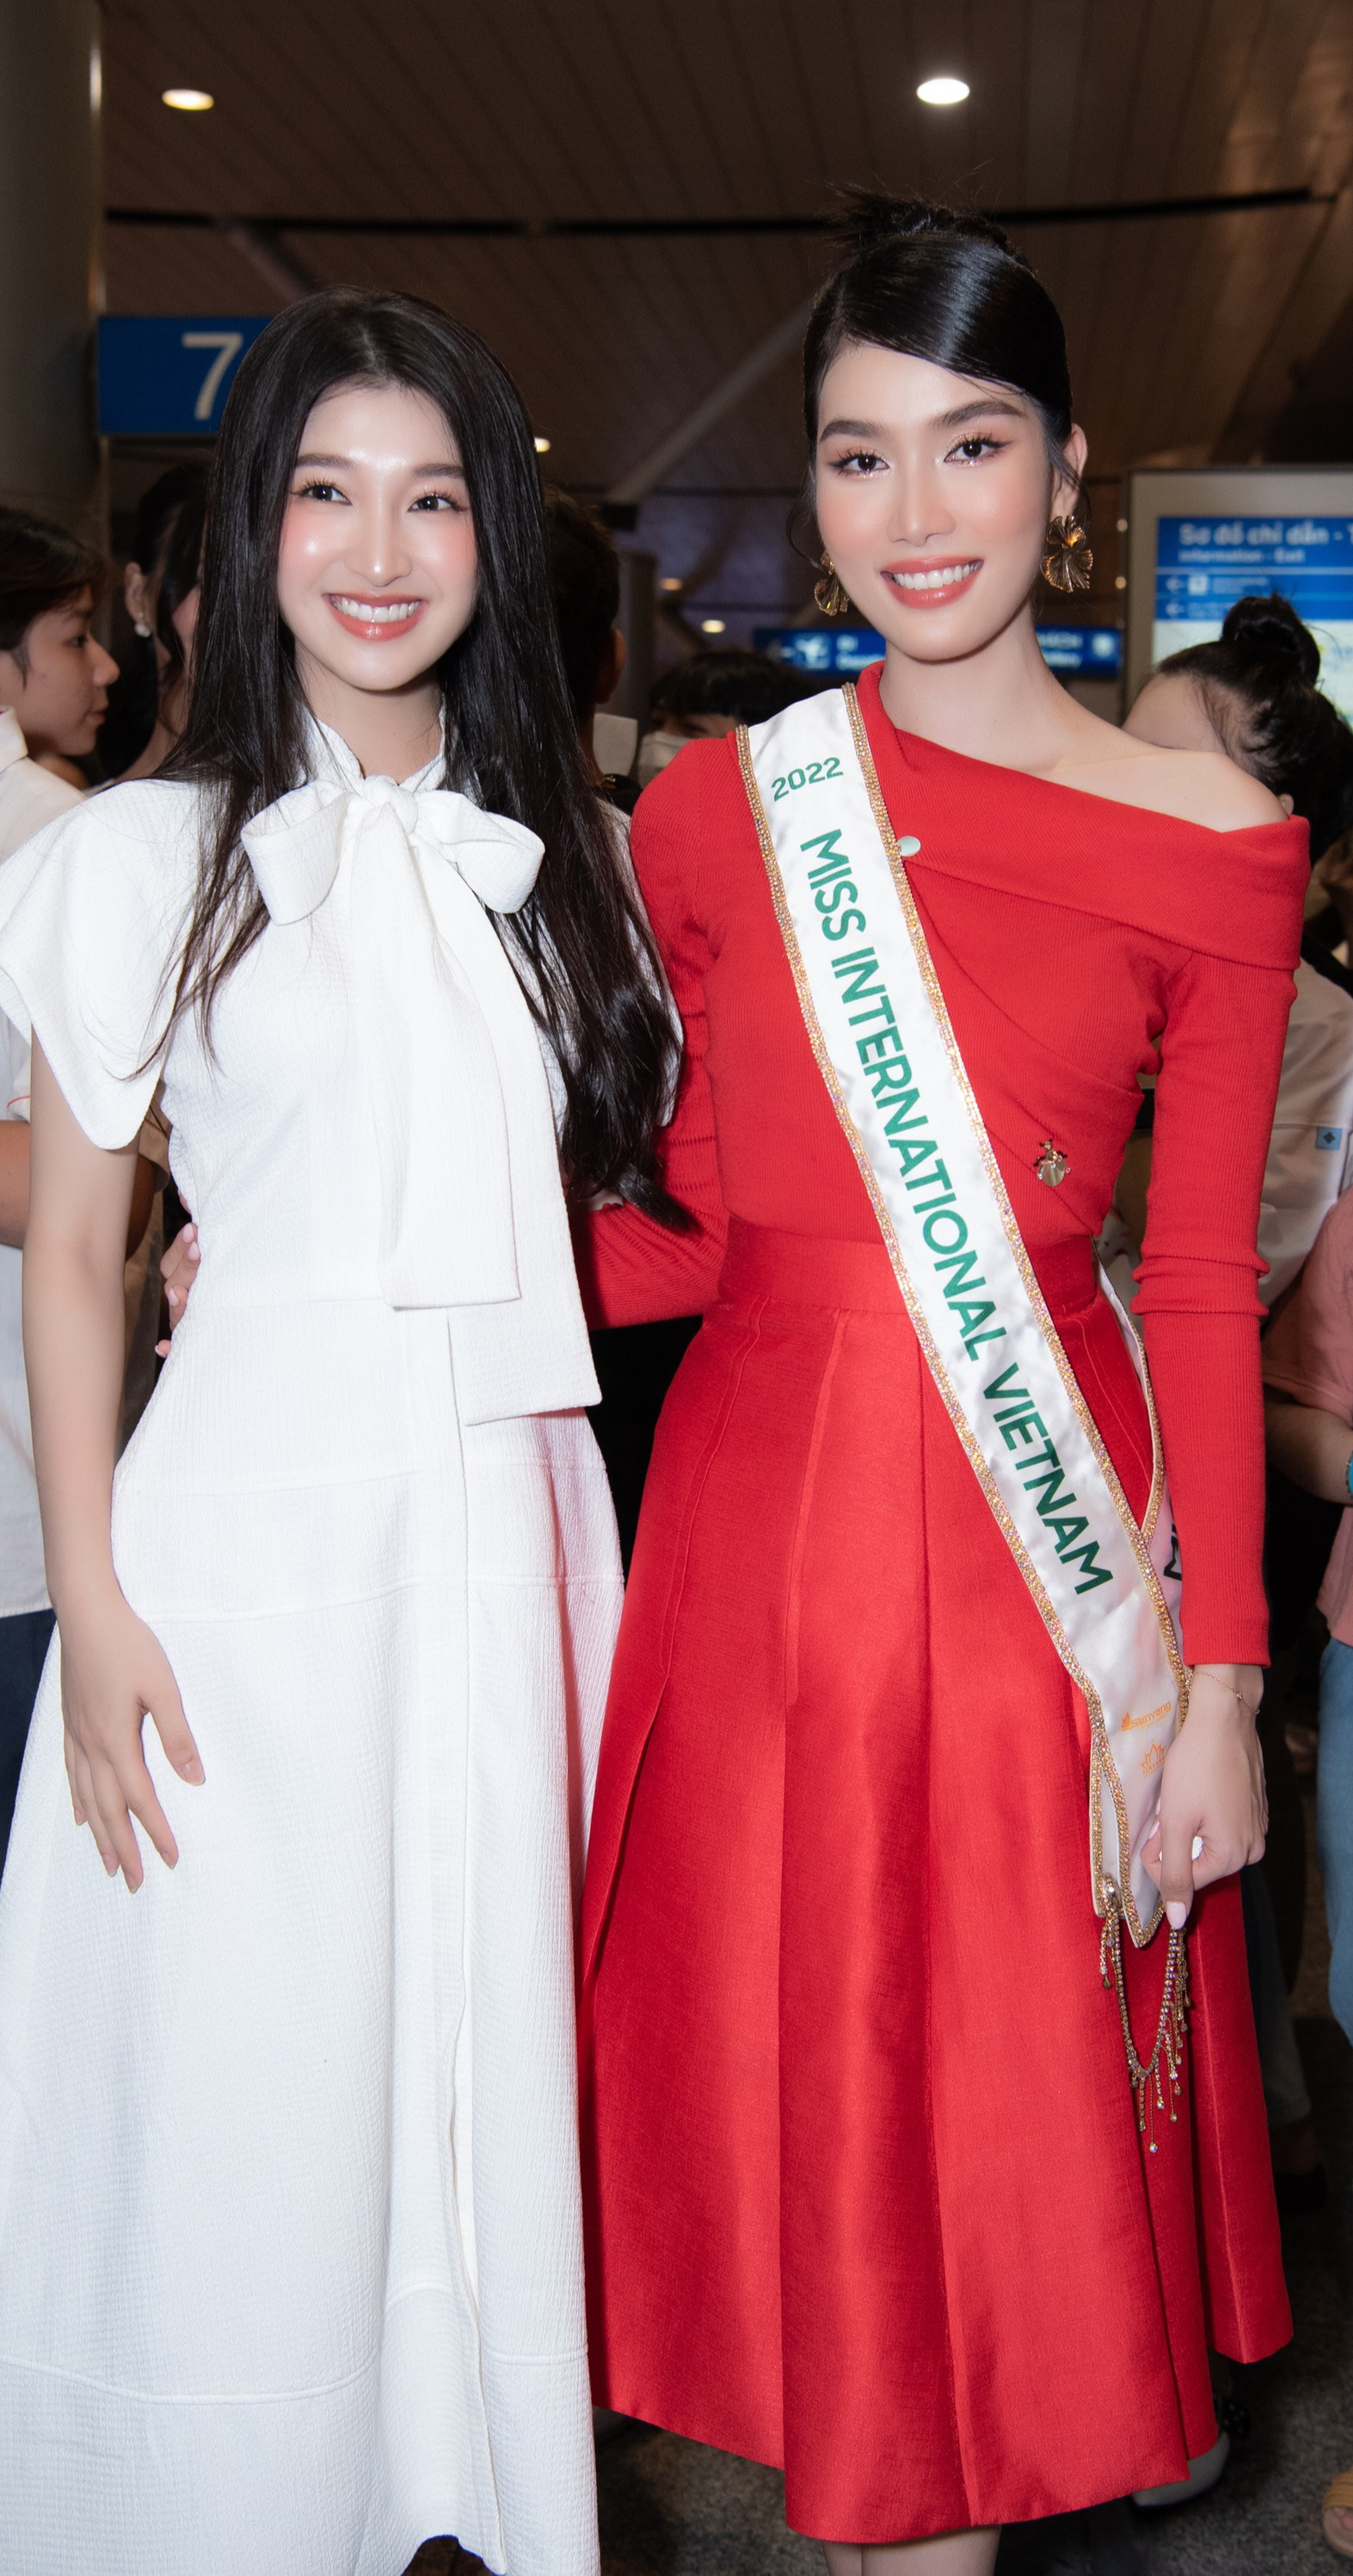 Á hậu Phương Anh xinh đẹp, lôi cuốn trong ngày đi thi Miss International 2022 - Ảnh 6.